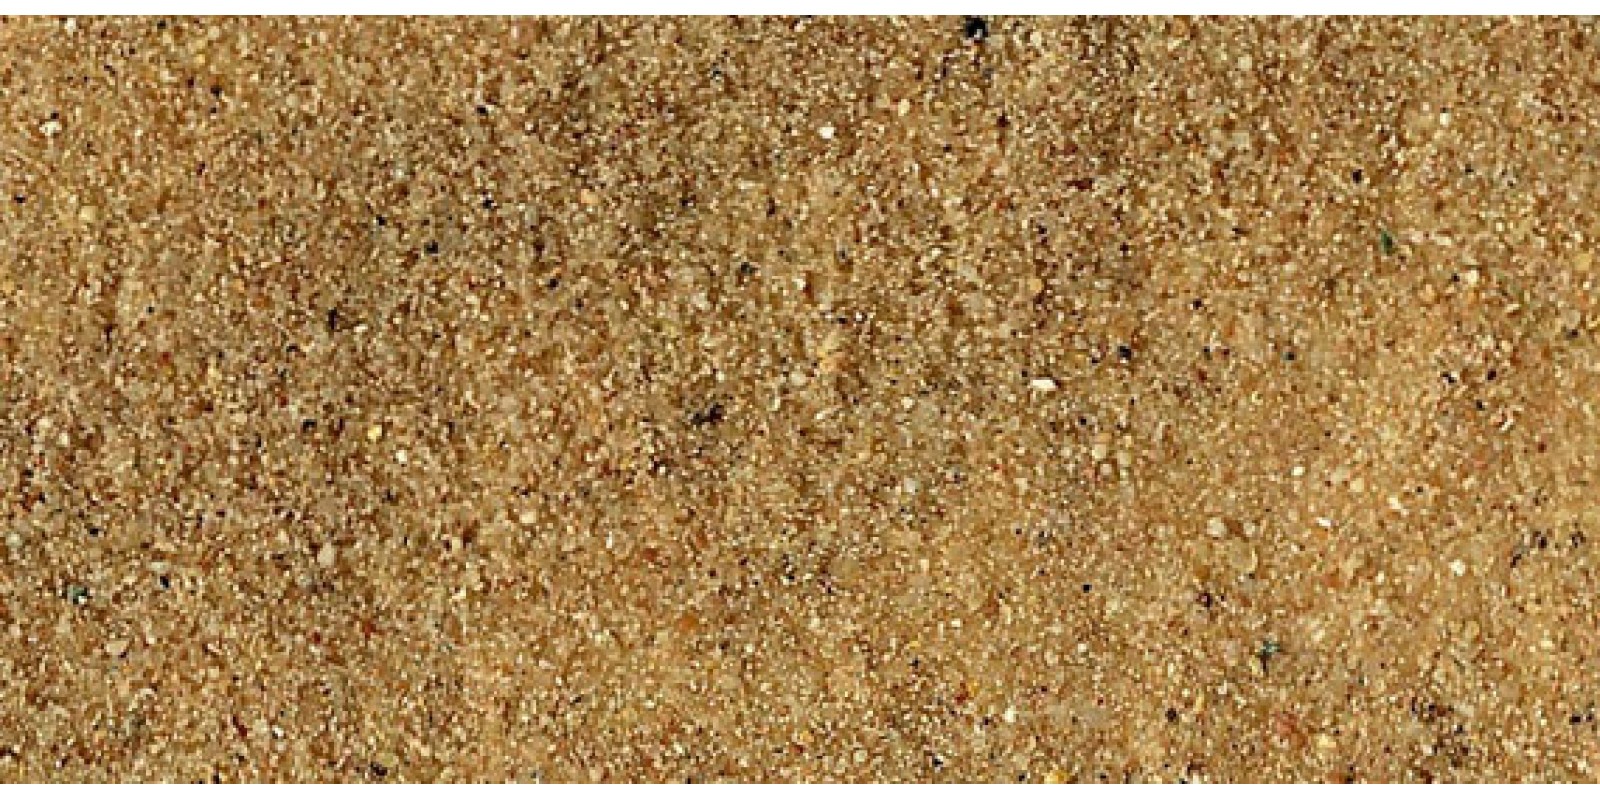 HE3322 Deko-Sand silber 